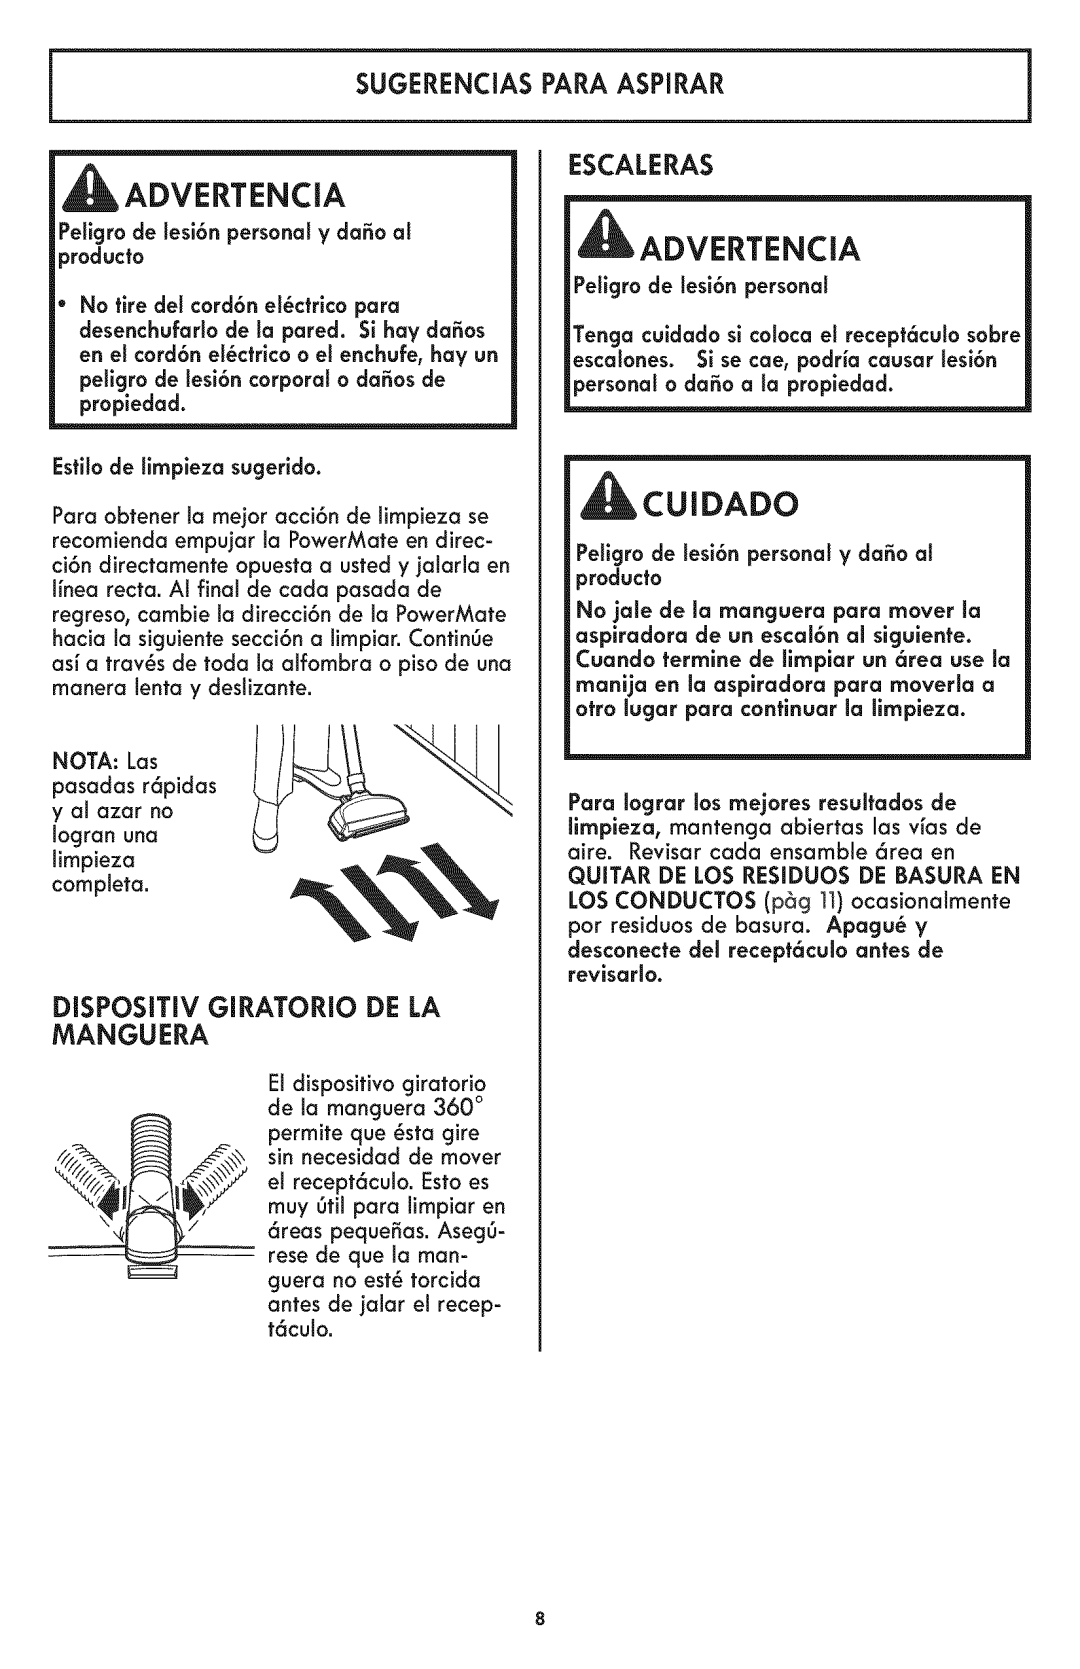 Kenmore 116.24194 manual I Advertencia, Cuidado, Sugerencias Para Aspirar, Disposmv Giratorio De La Manguera, Escaleras 